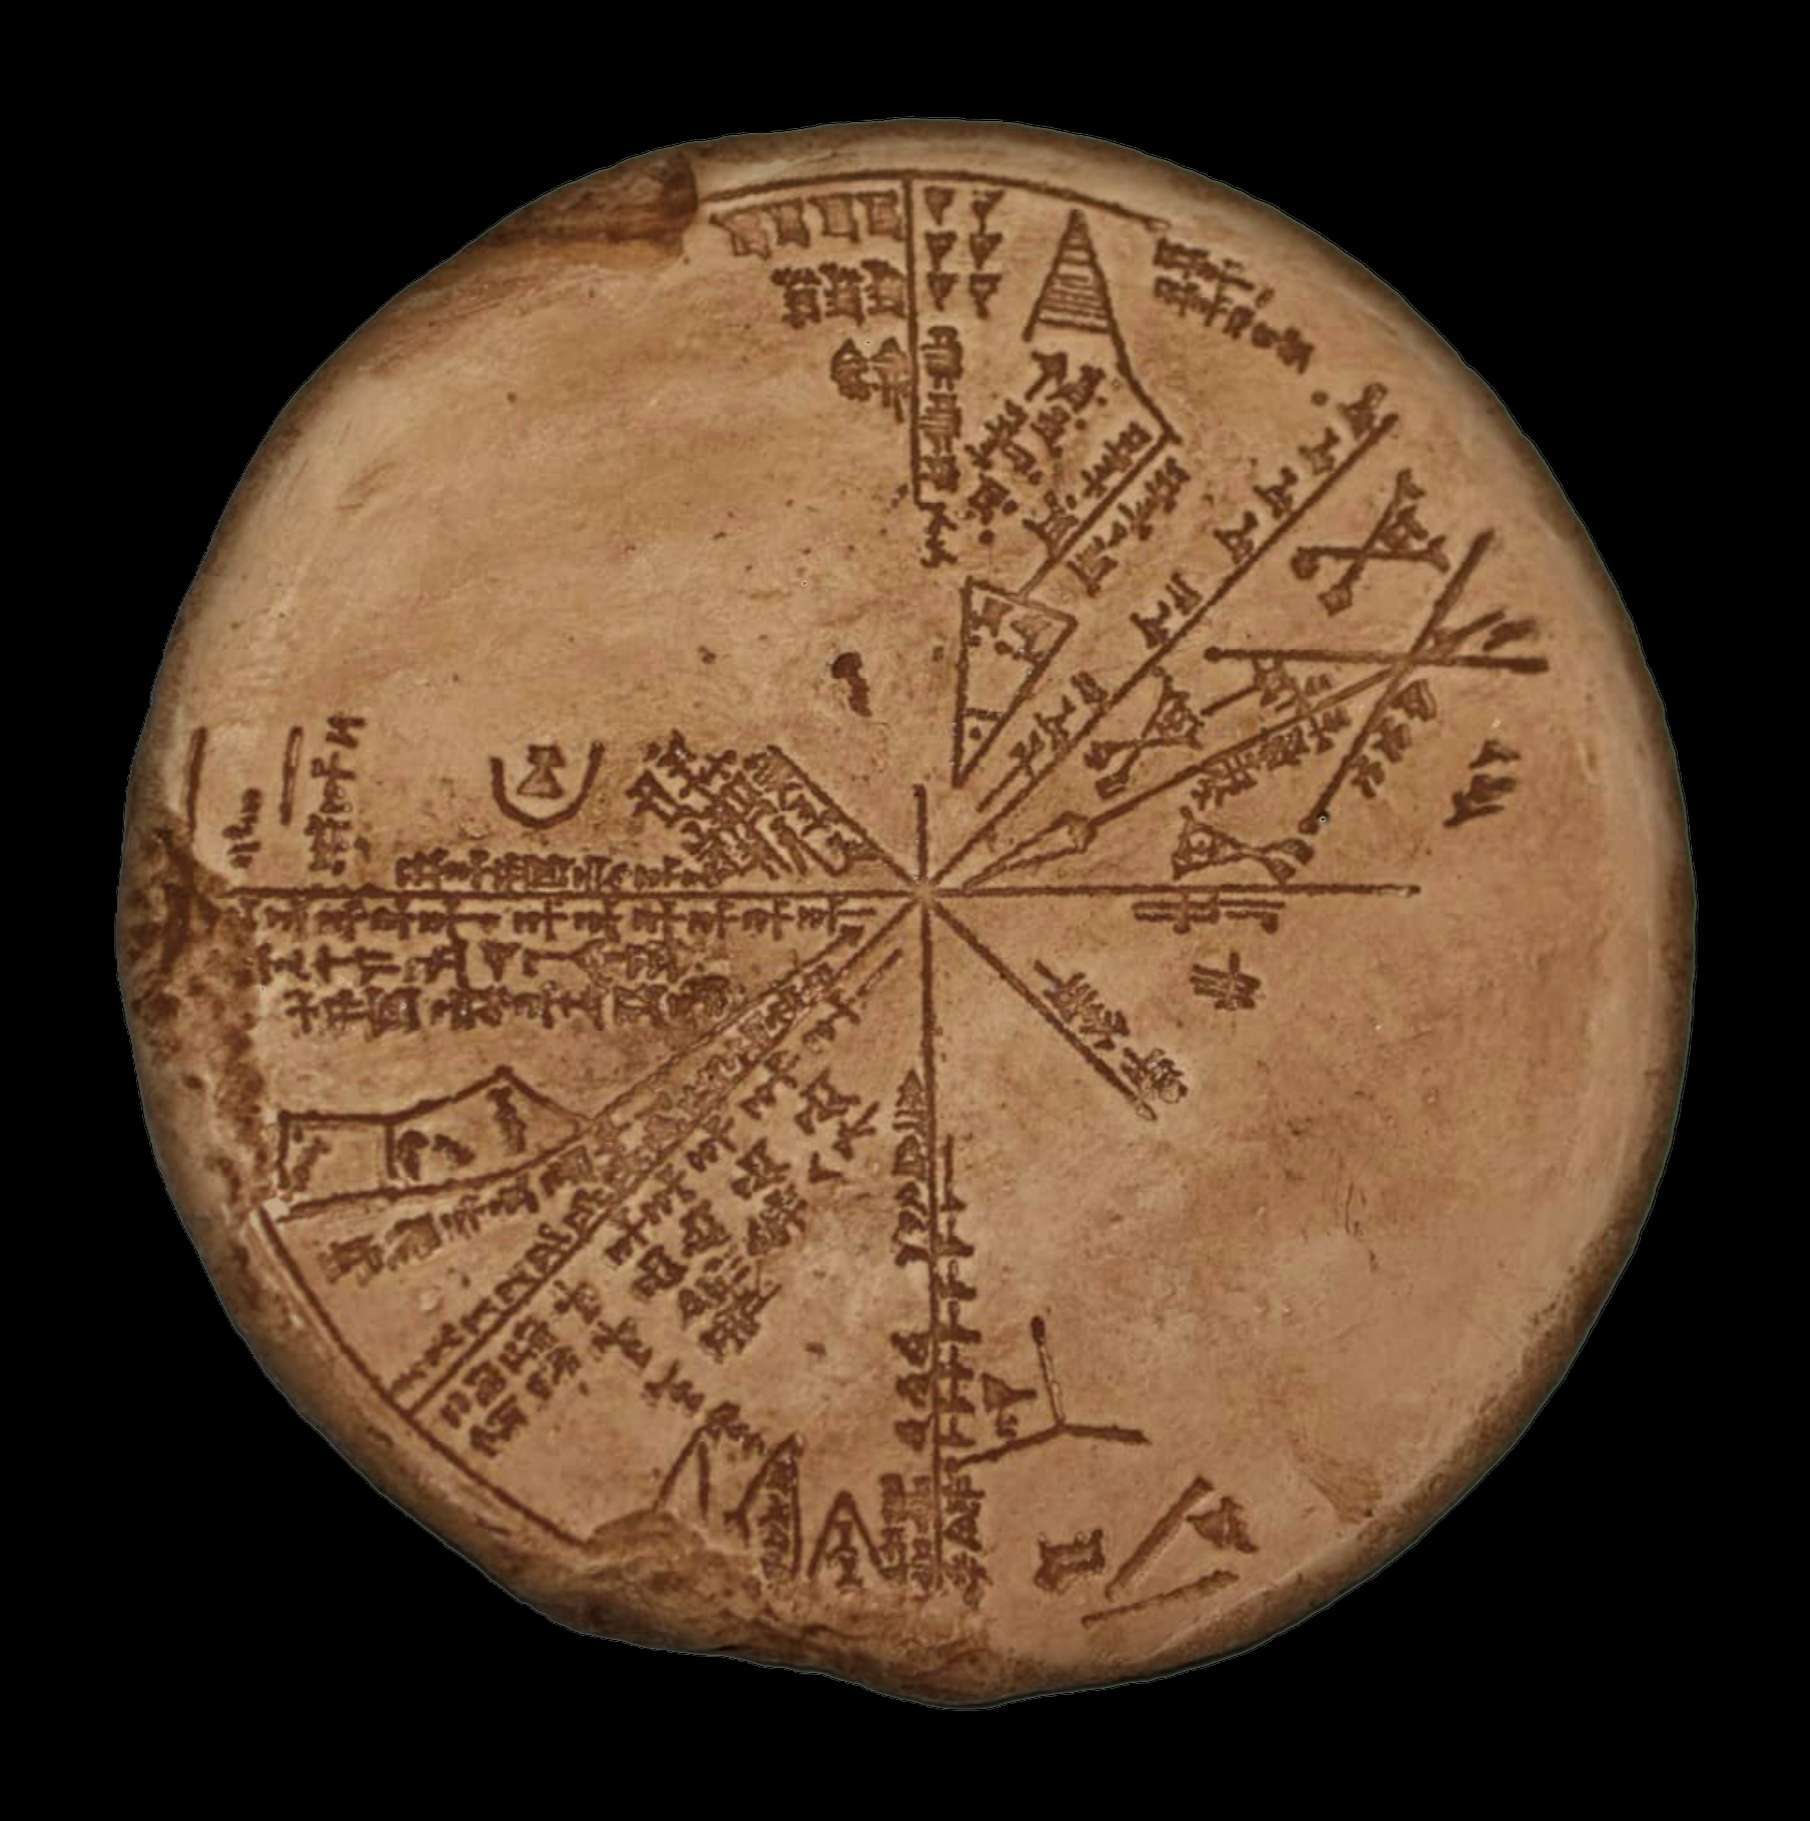 A sumér planiszféra Az ékírásos tábla a British Museum K8538 számú gyűjteményében